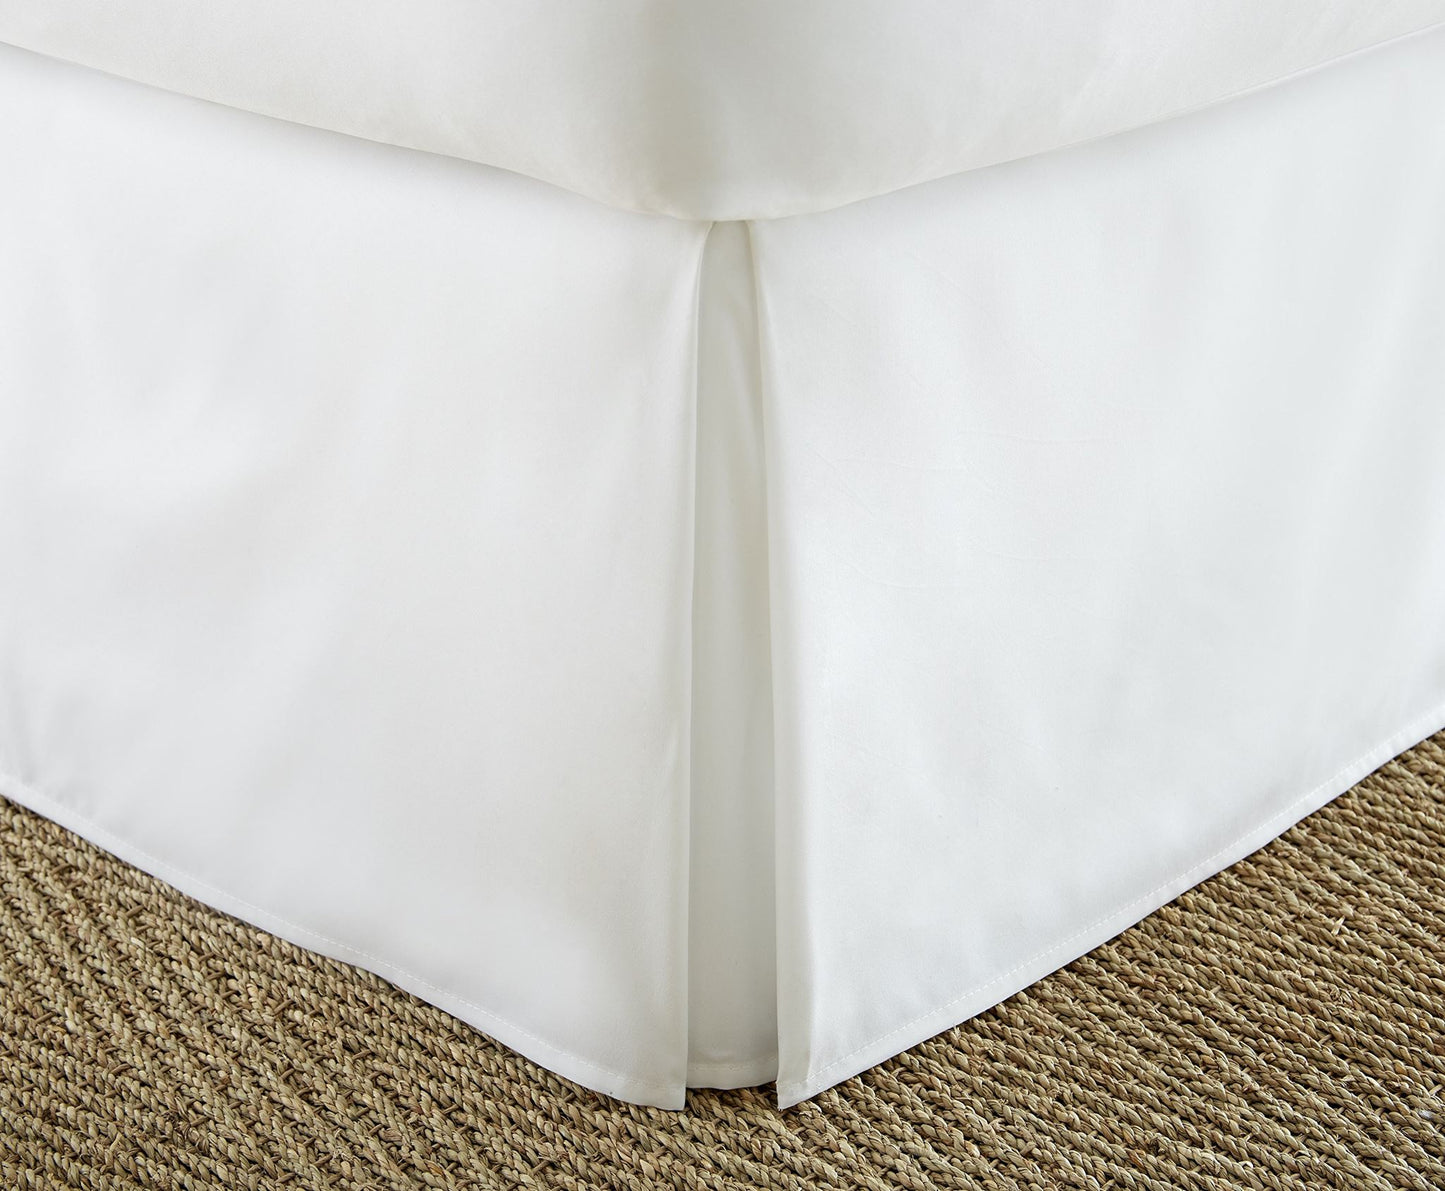 ienjoy Home Premium falda de cama plisada con volantes, Full, color blanco